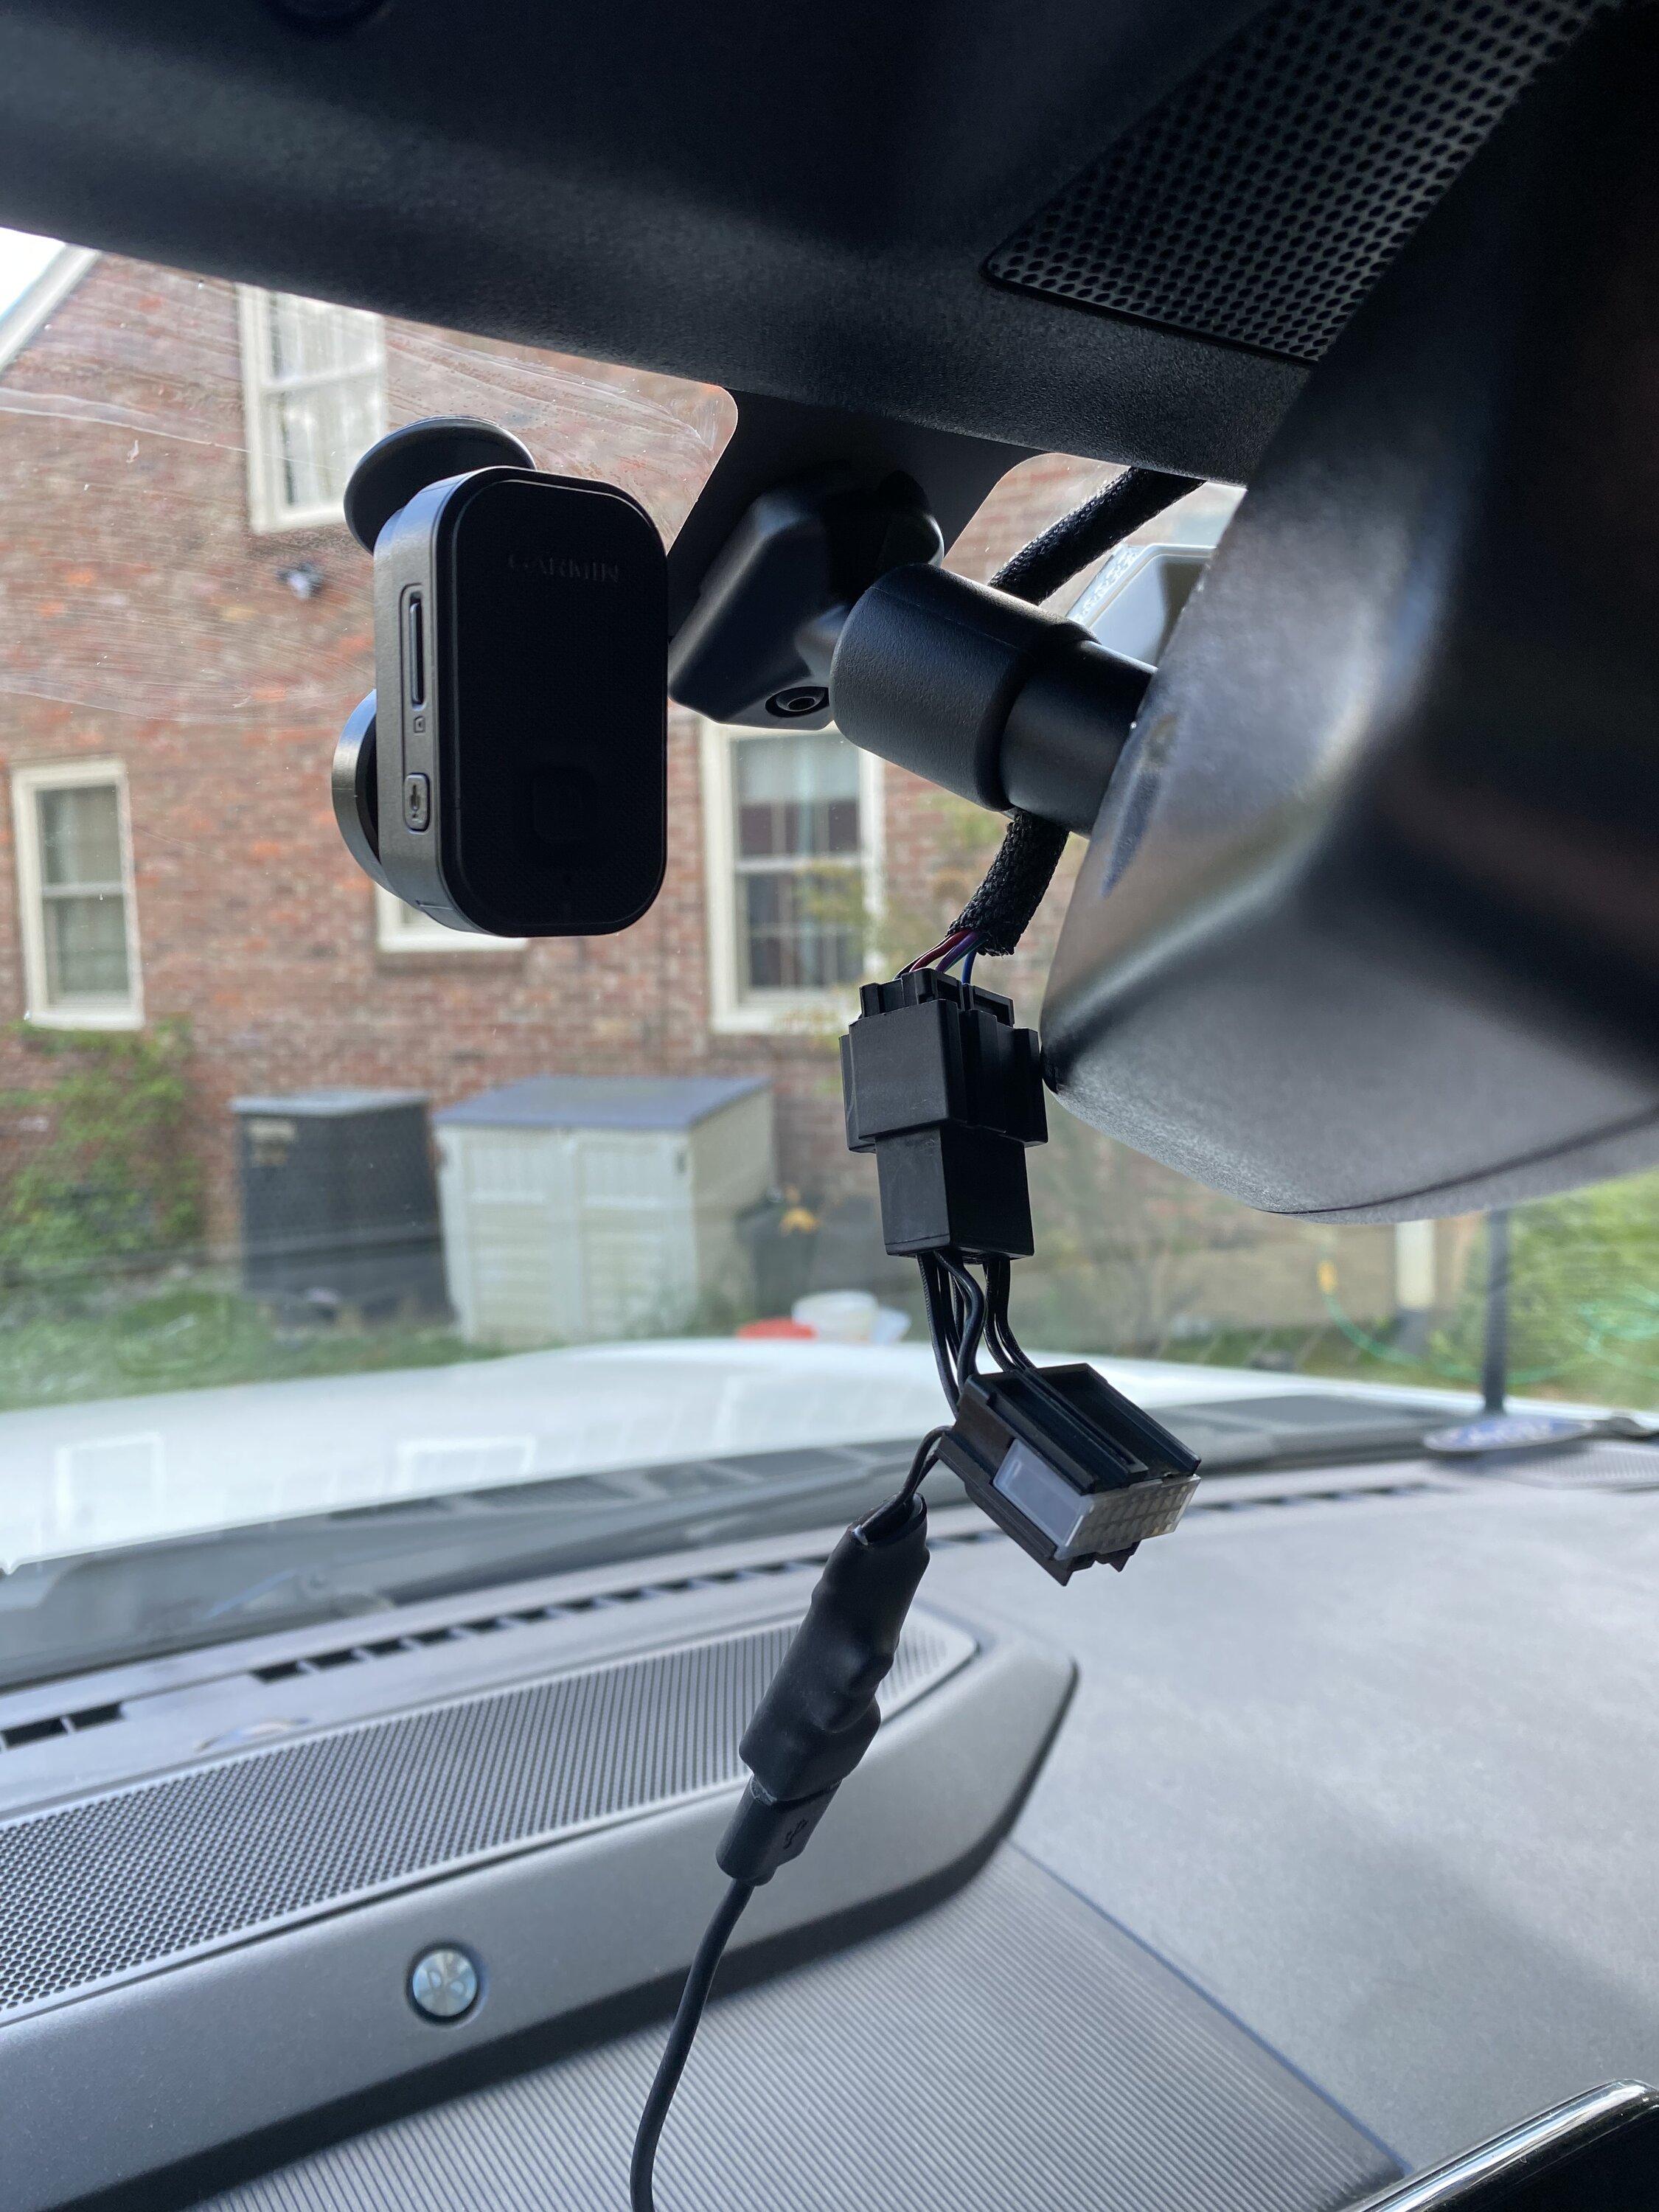 Garmin Dash Cam Mini 2 review